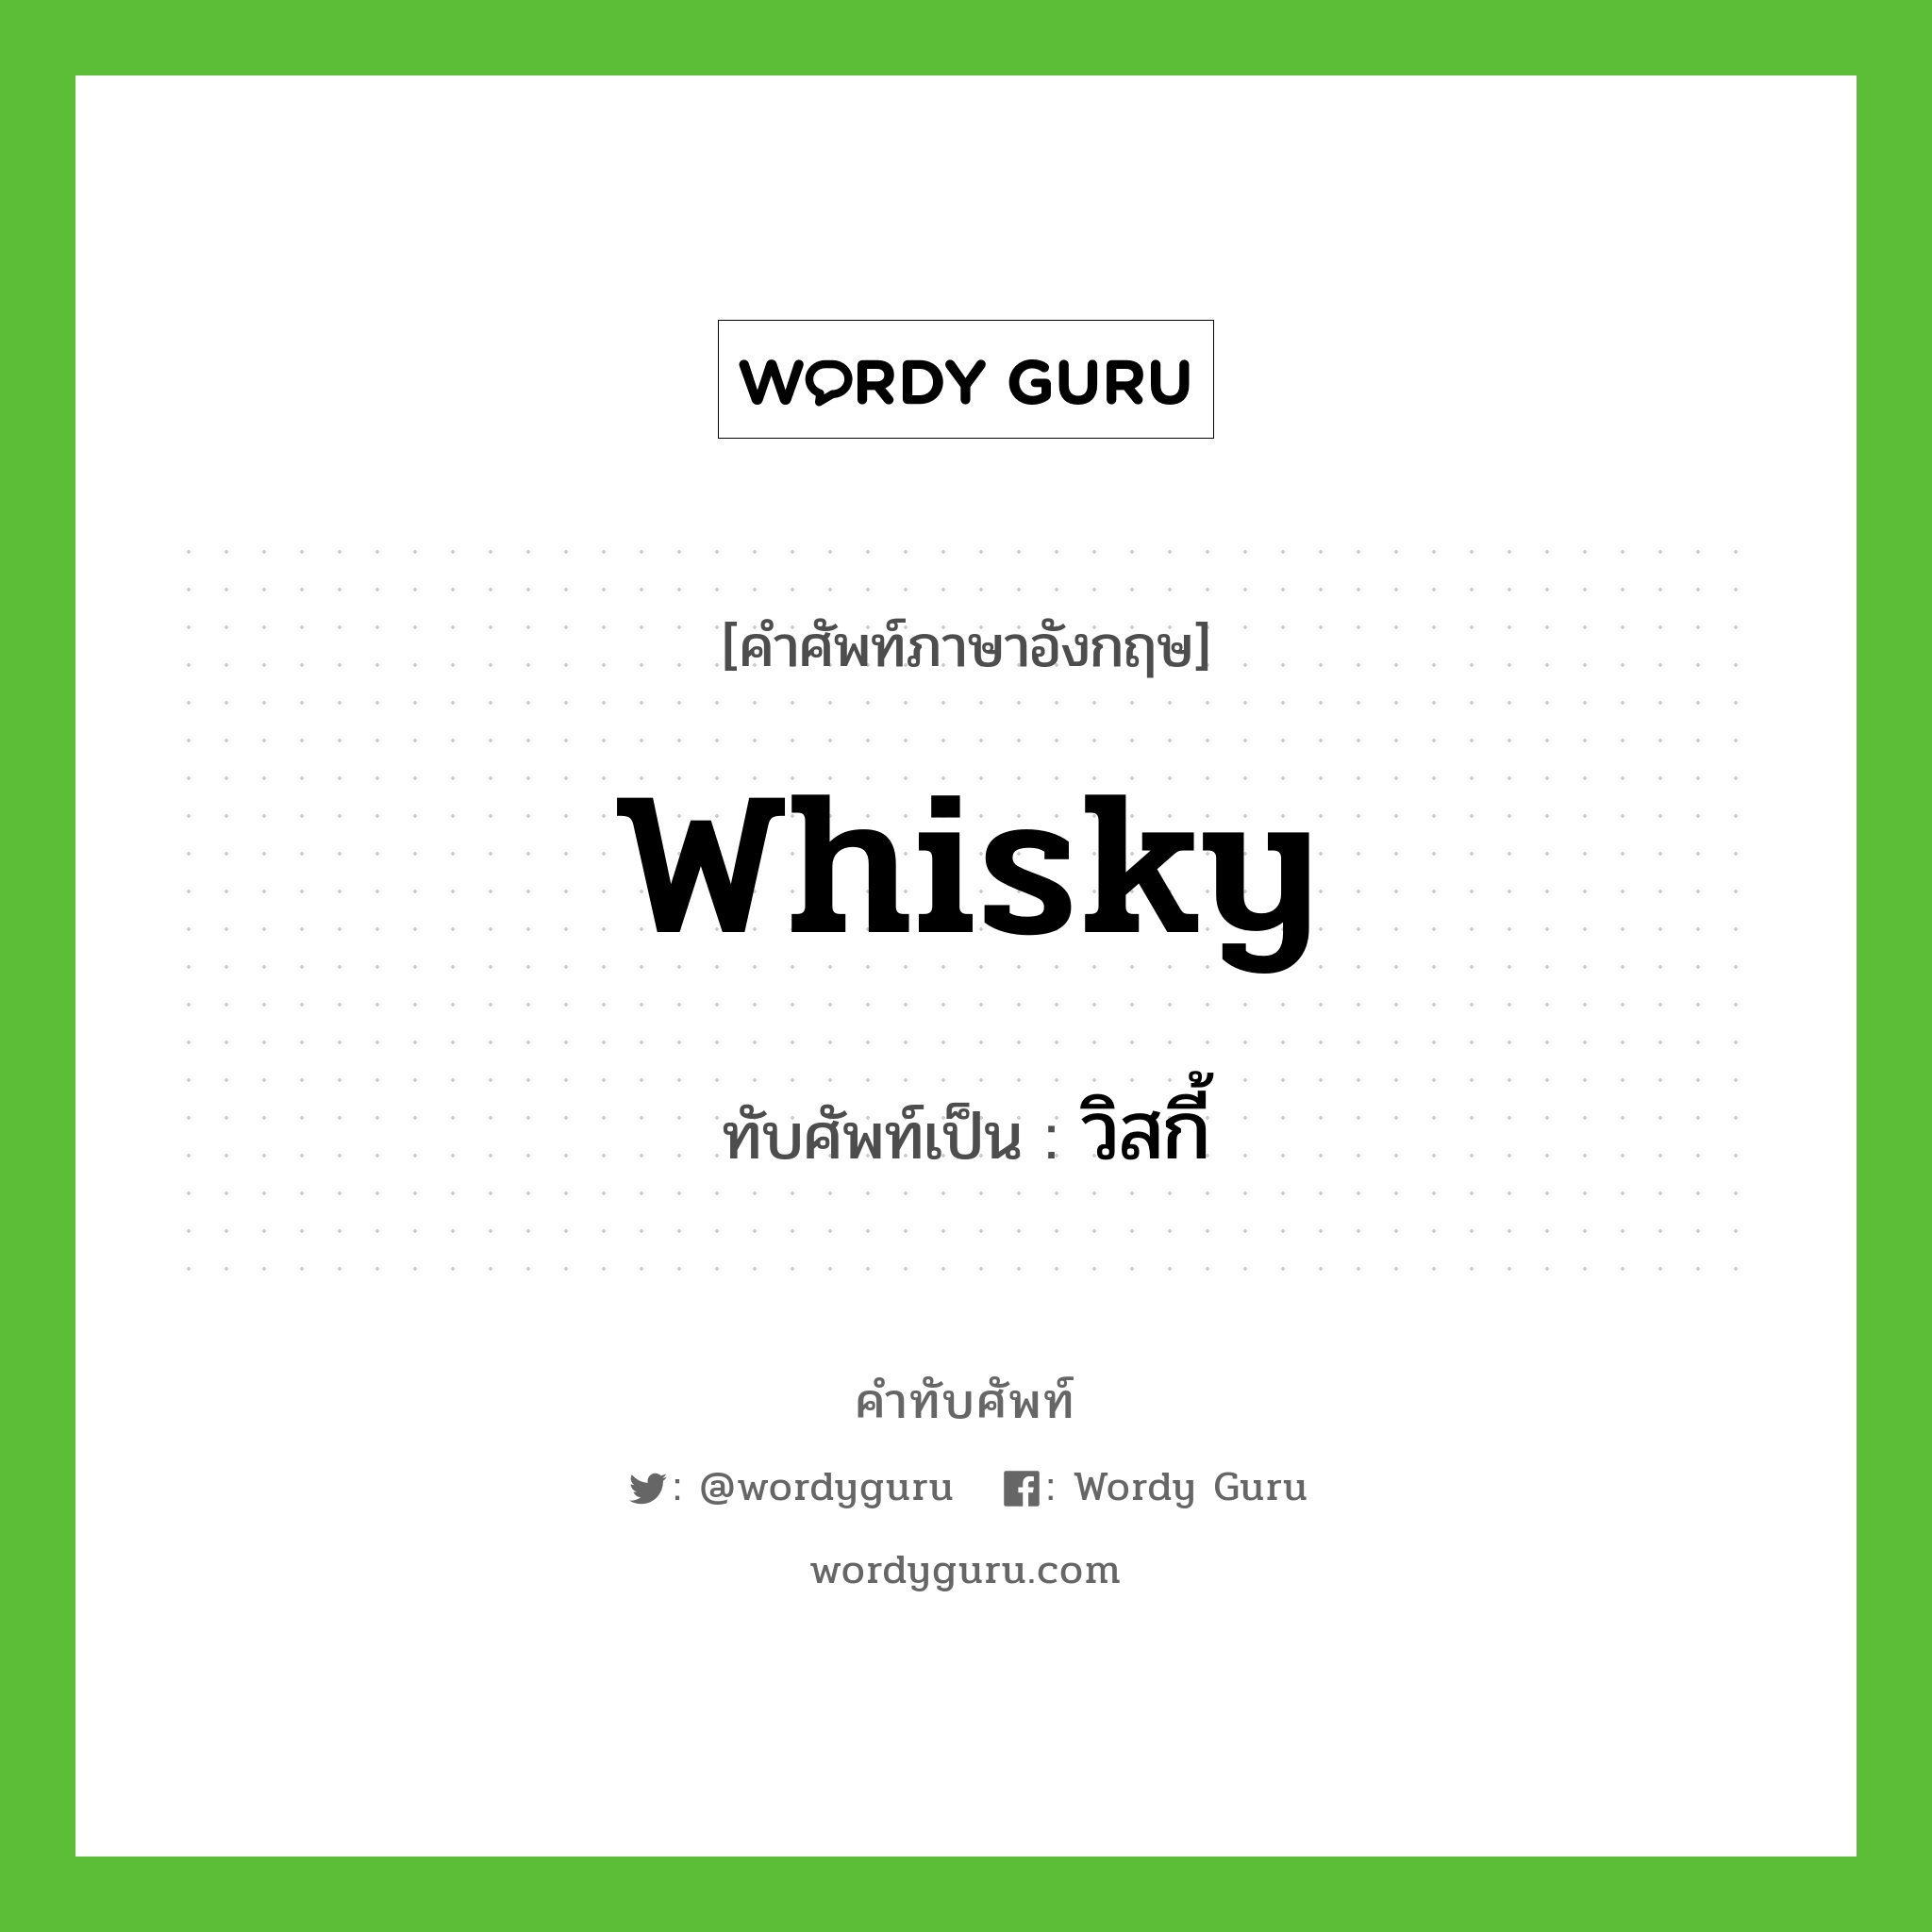 whisky เขียนเป็นคำไทยว่าอะไร?, คำศัพท์ภาษาอังกฤษ whisky ทับศัพท์เป็น วิสกี้